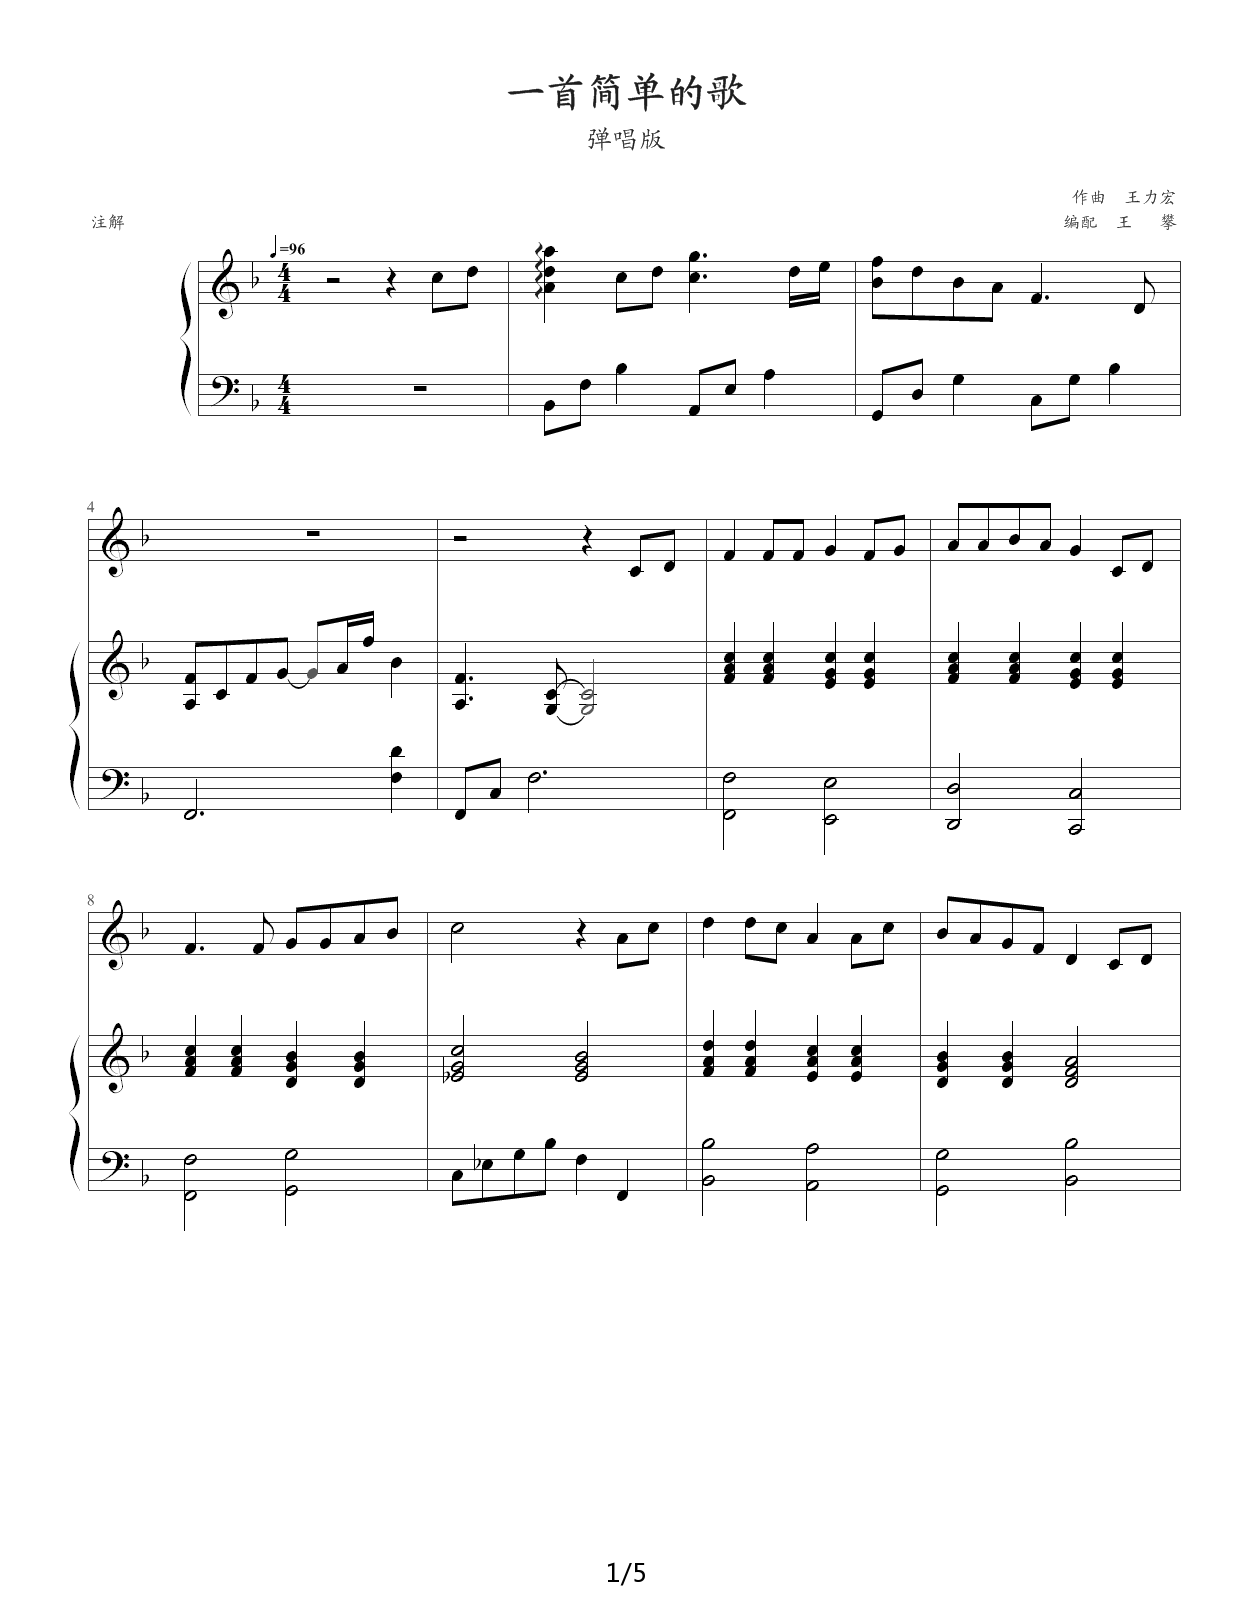 一首简单的歌钢琴谱|一首简单的歌最新钢琴谱|一首简单的歌钢琴谱下载